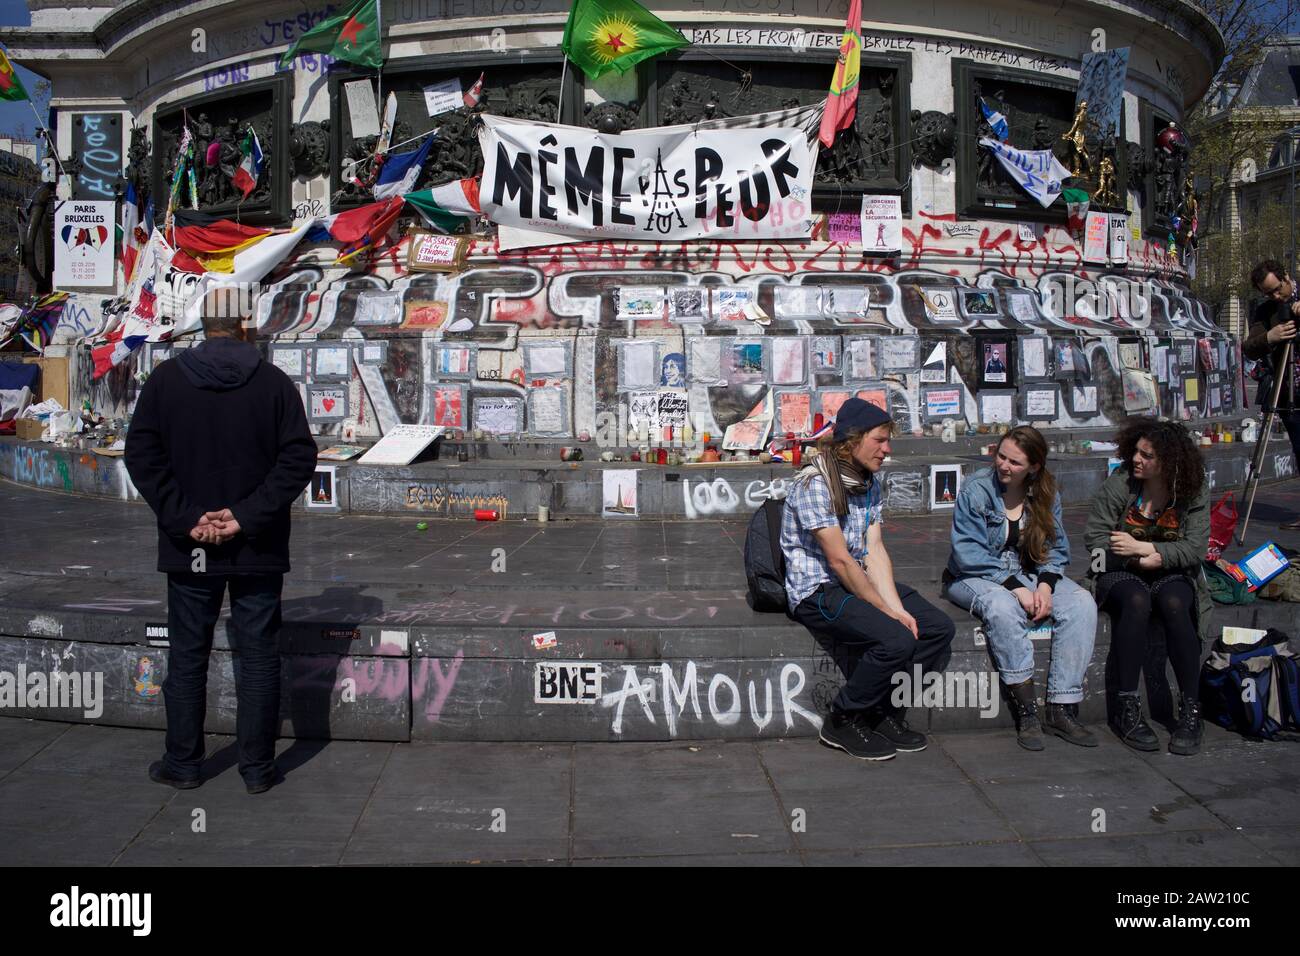 Persone sedute su gradini della statua di Marianne davanti a messaggi che commemorano le vittime degli attacchi di Parigi e Bruxelles, Place de la République, Parigi, Francia - aprile 2016 Foto Stock